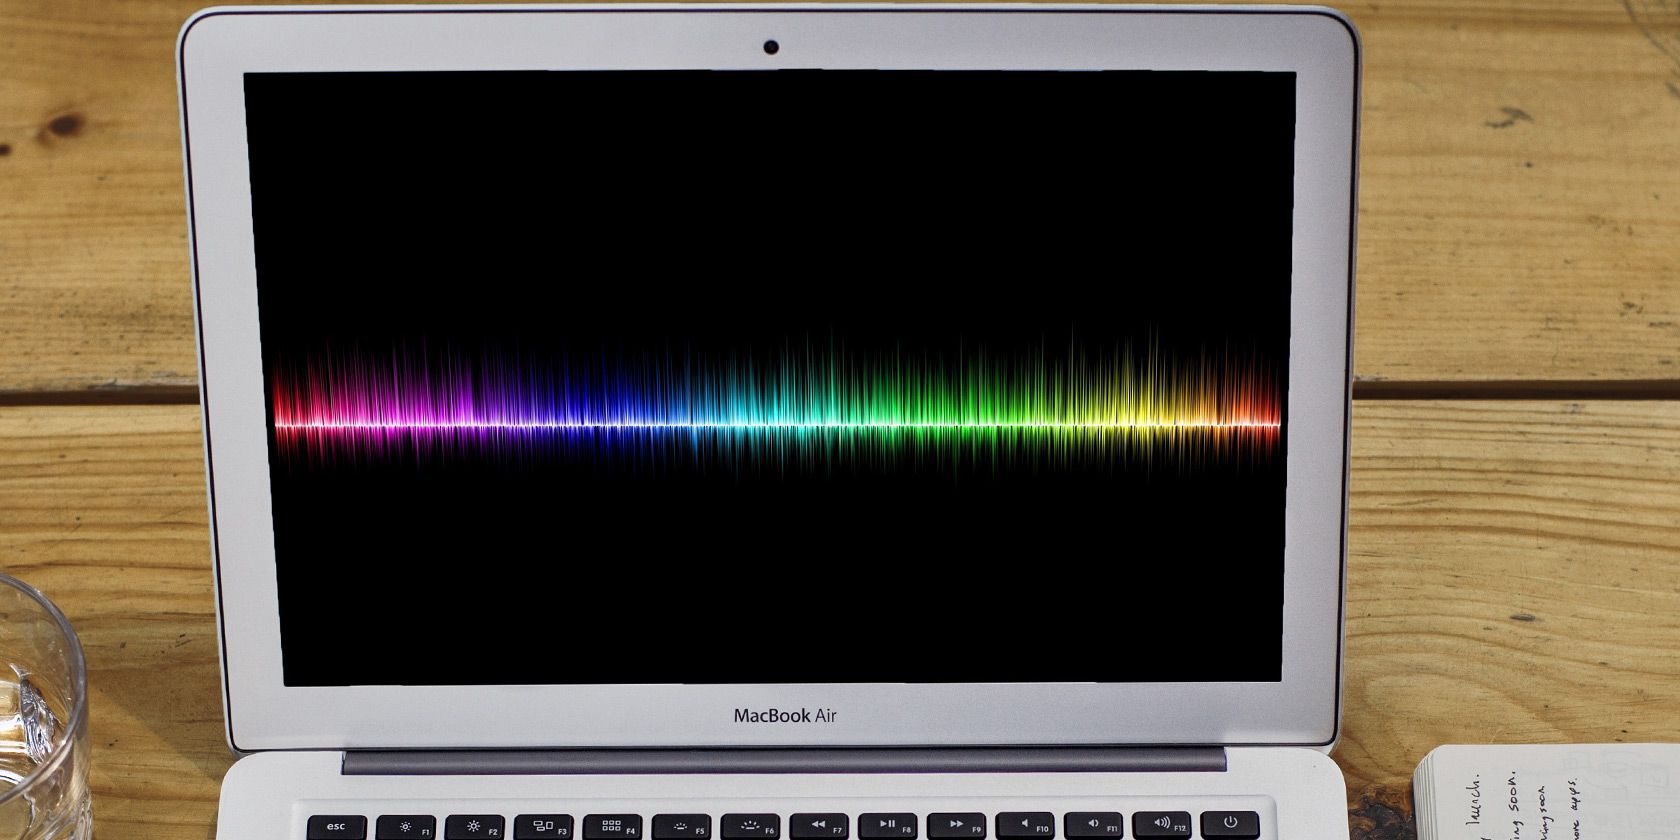 digital audio editor for mac